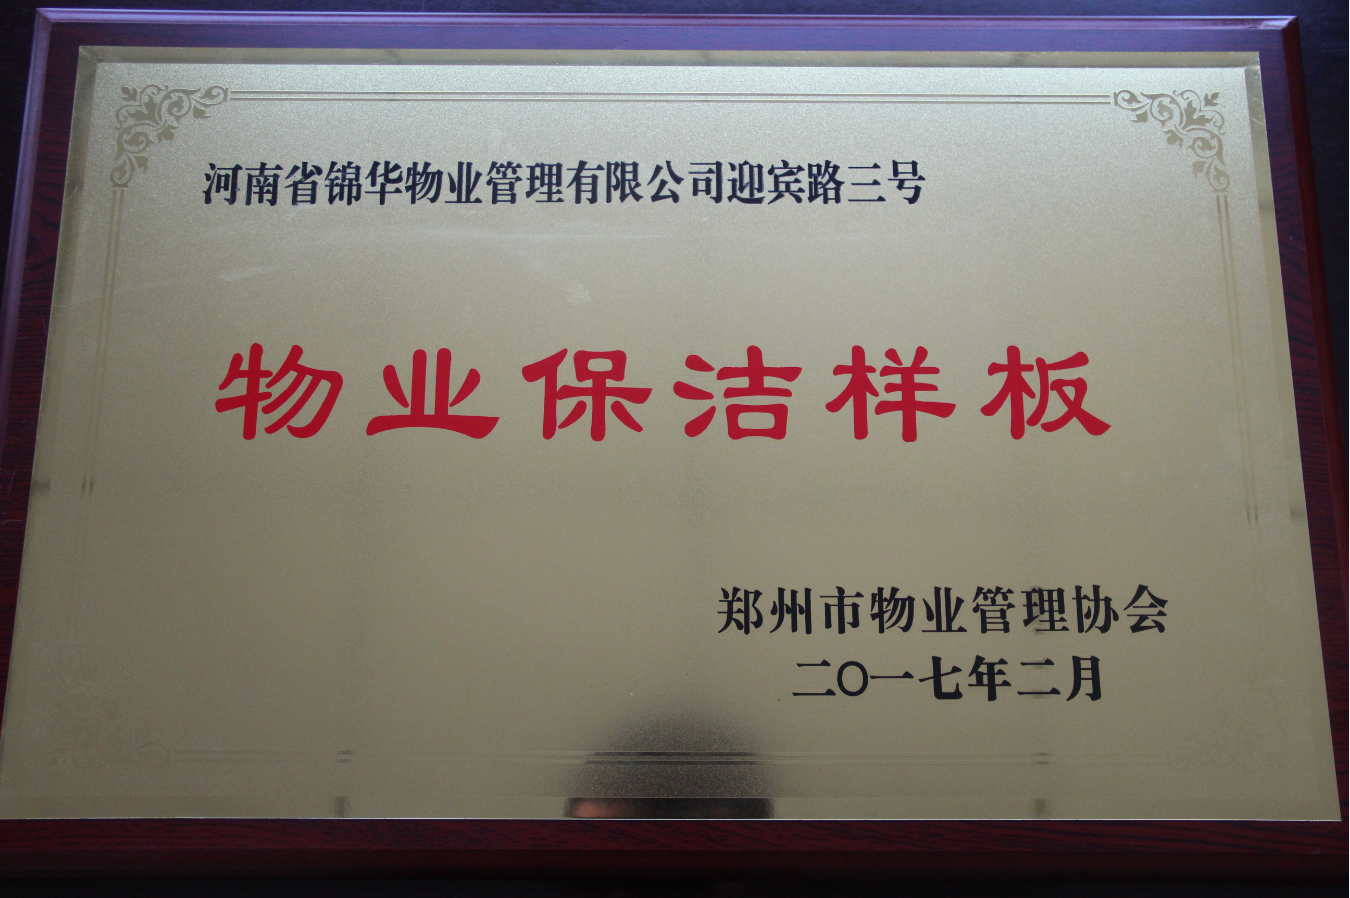 郑州市物业管理协会评为“物业保洁样板”